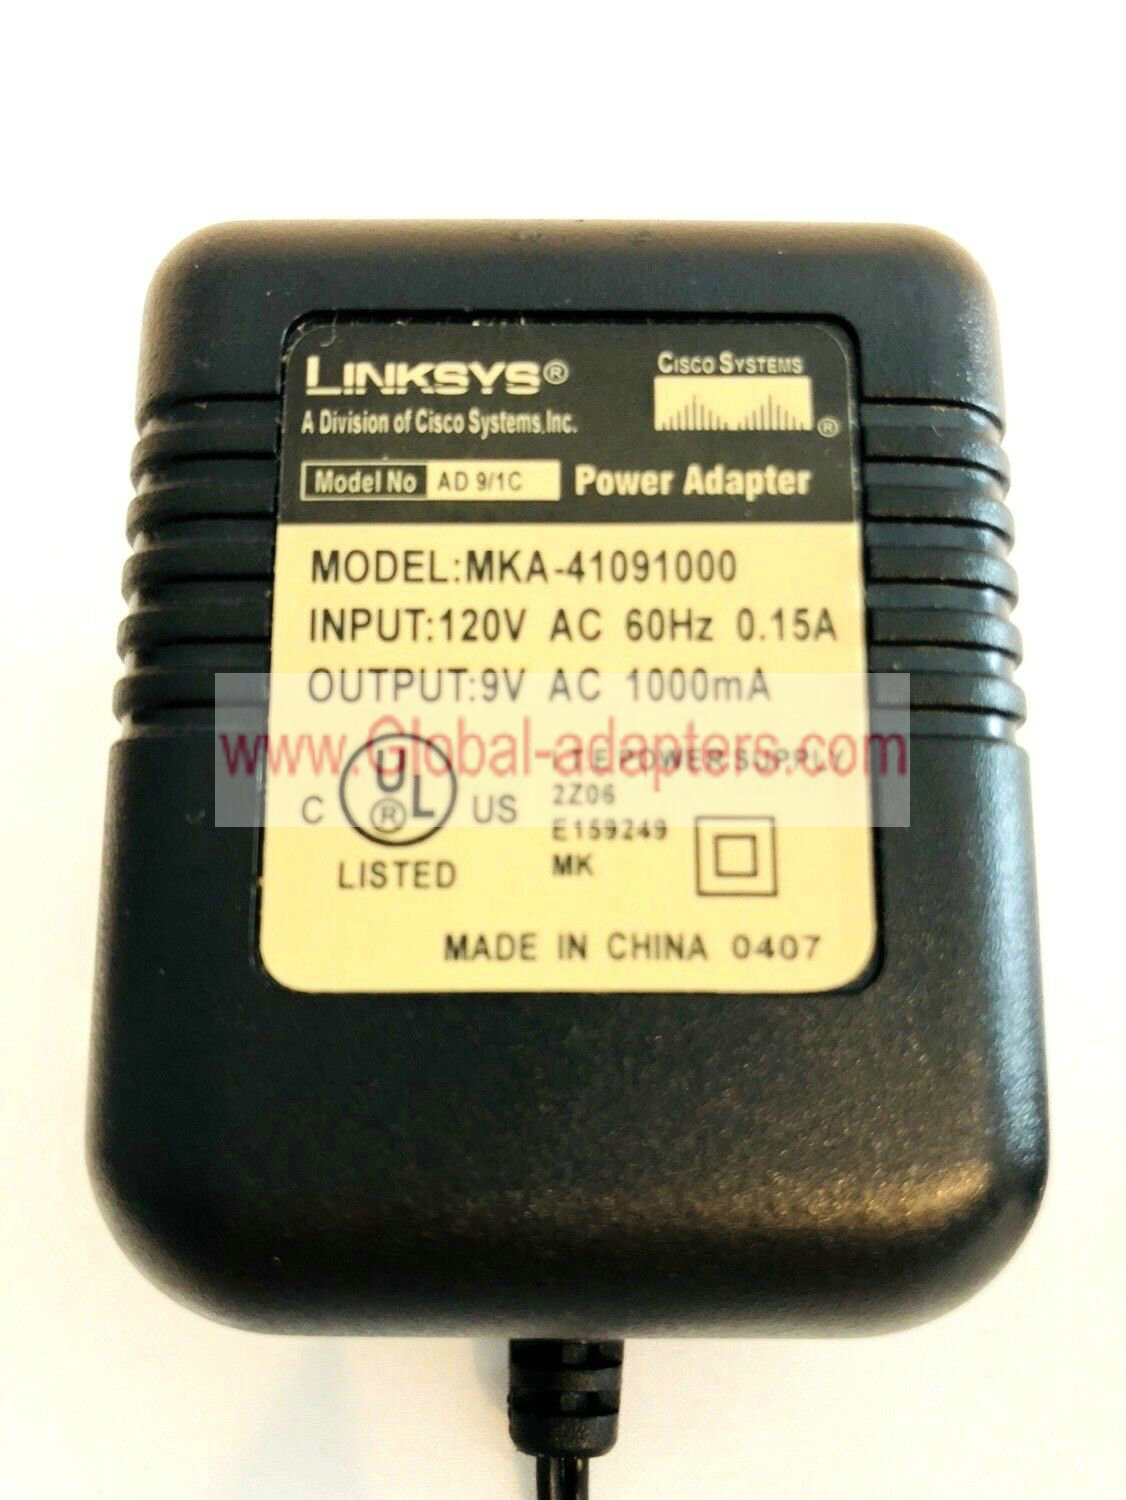 NEW Cisco Linksys MKA-41091000 9VAC 1000mA AD 9/1C AC Adapter Power Supply